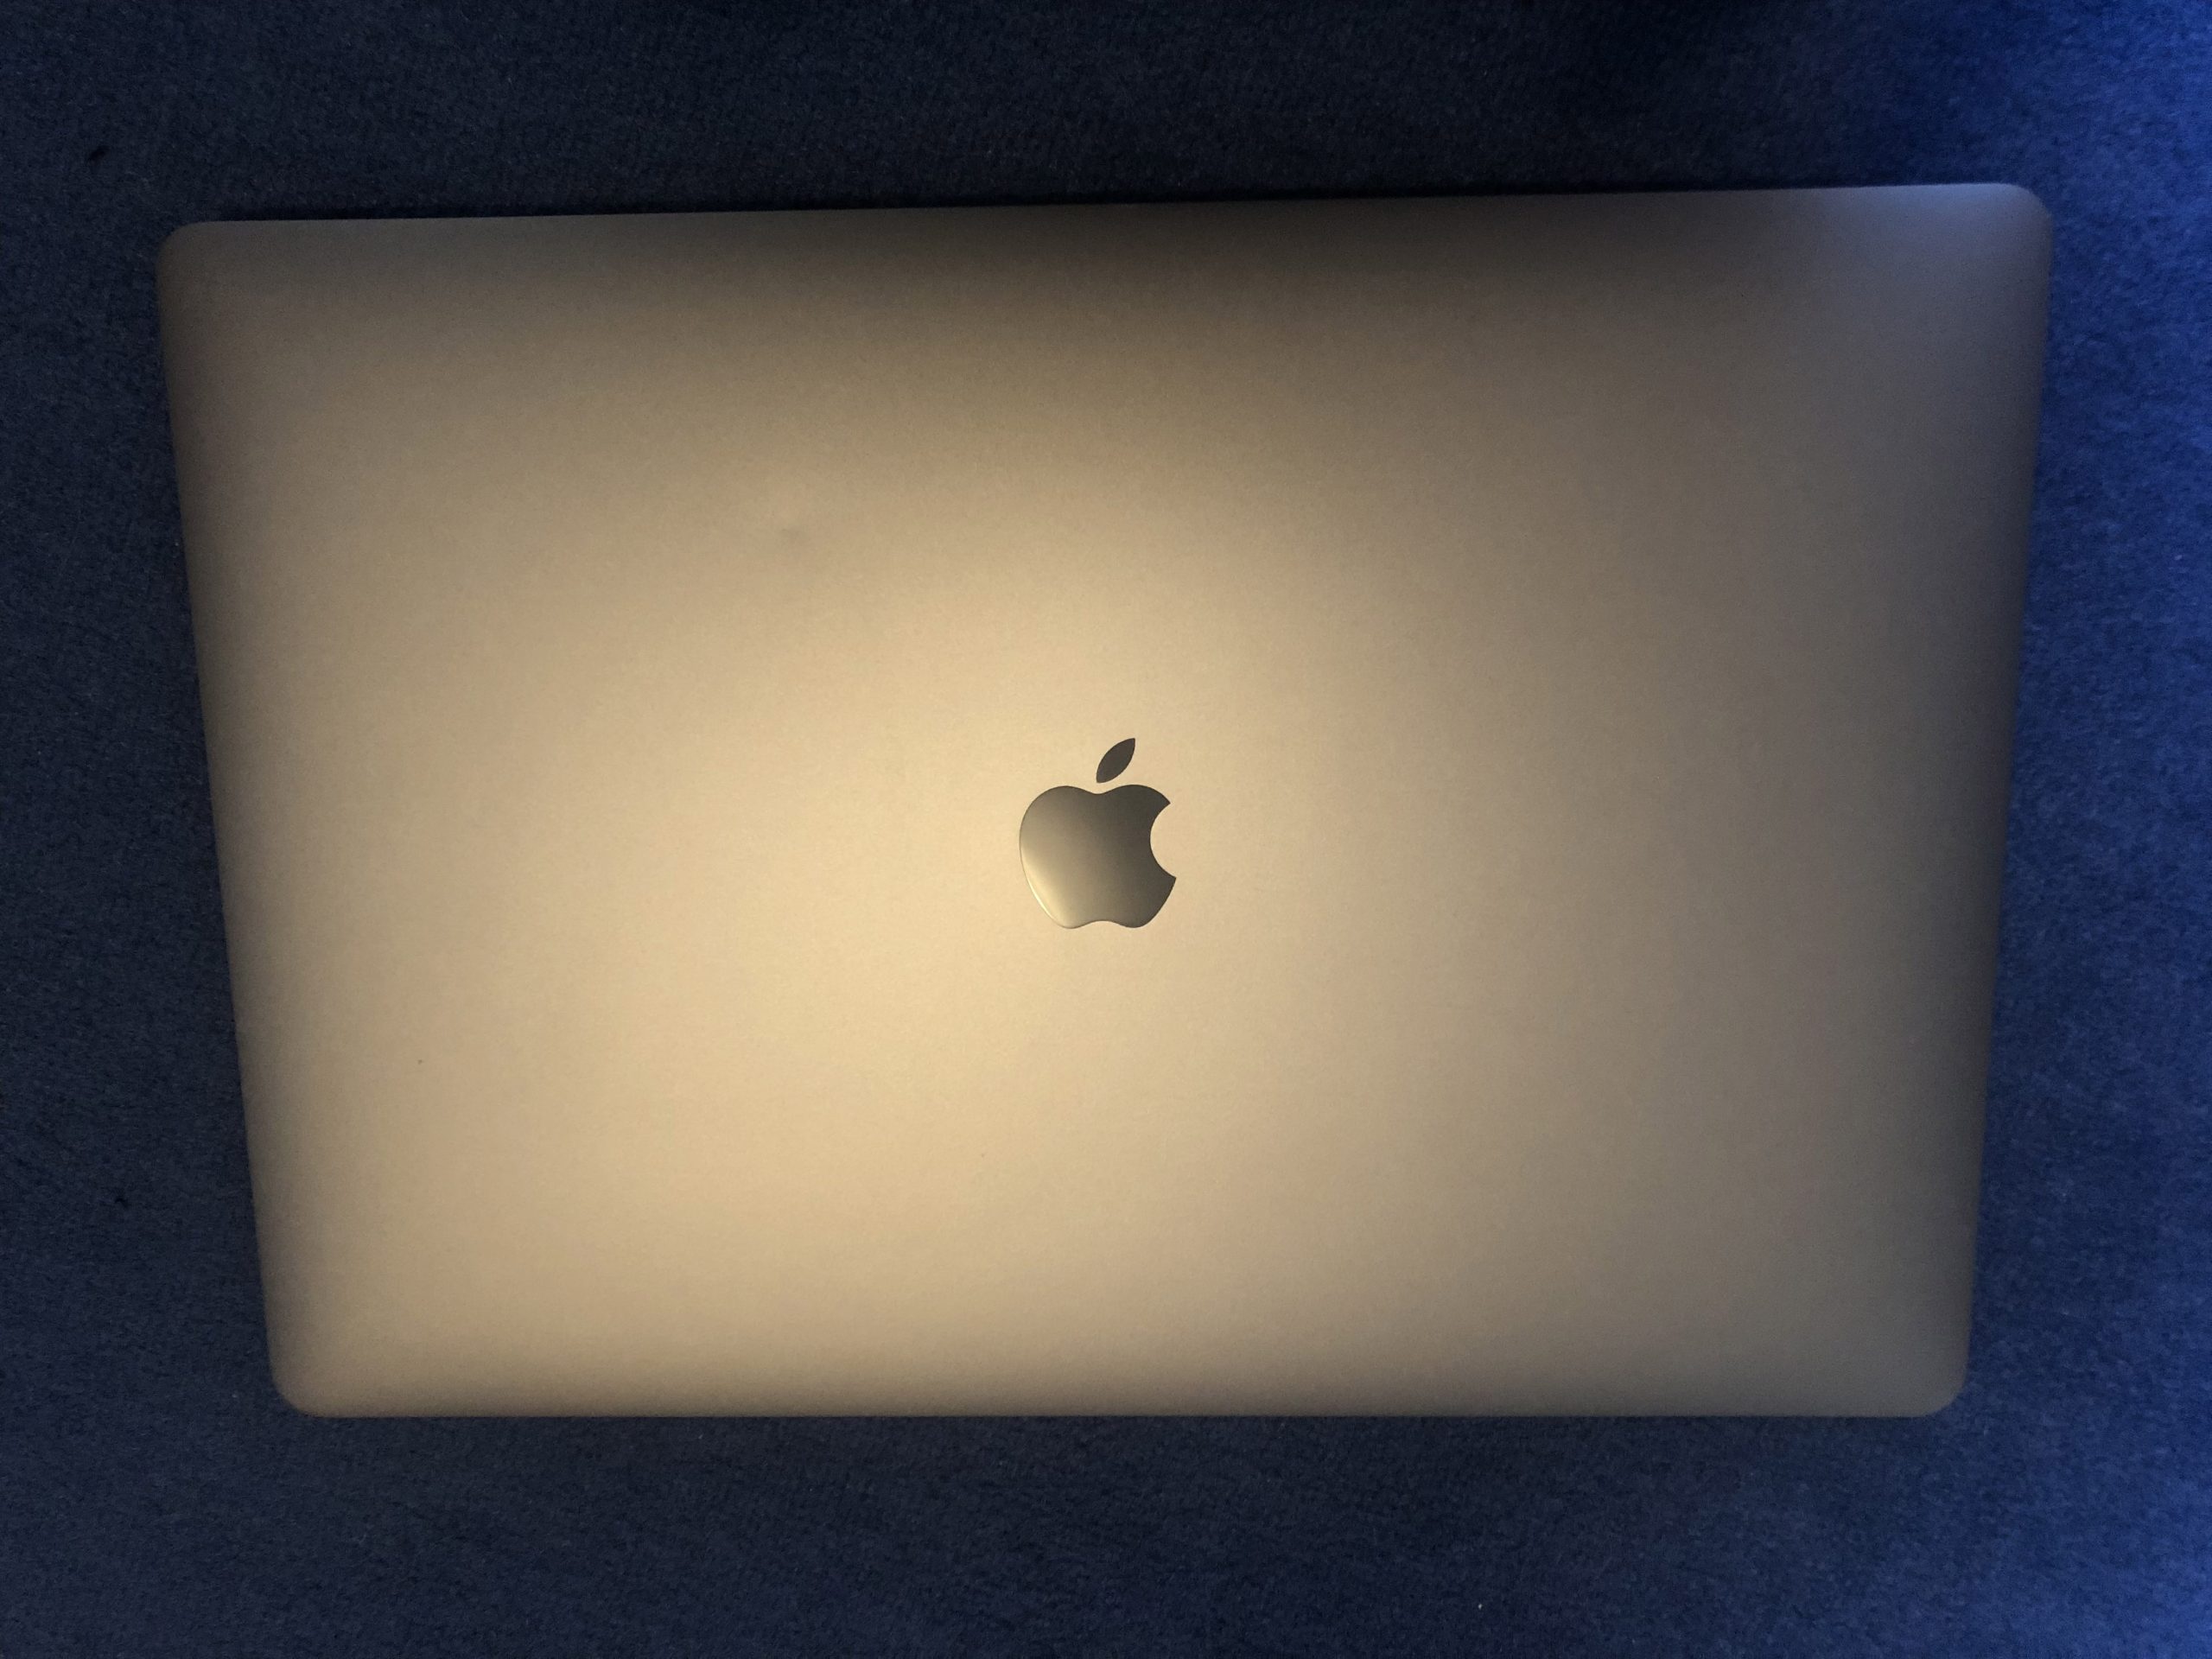 MacBookPro 16 » 2019 I9 2.3GHz 32Go 1To AMD pro 55